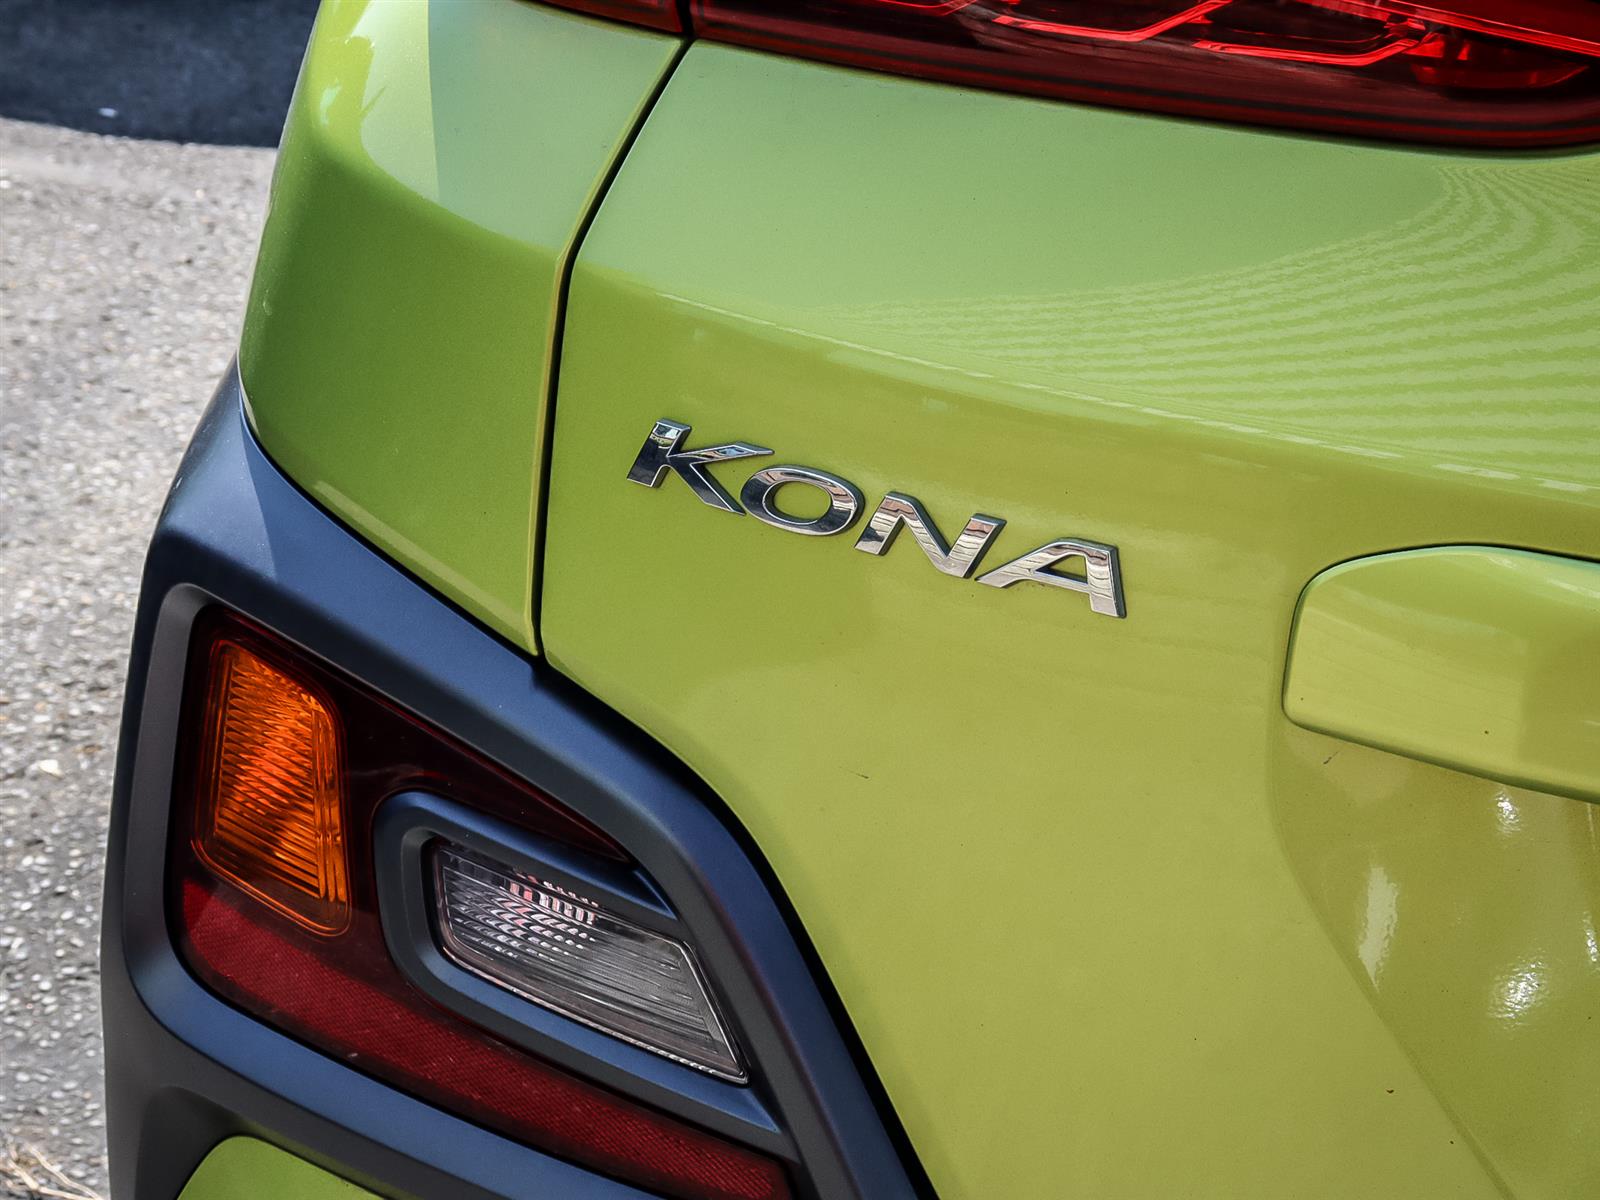 used 2019 Hyundai Kona car